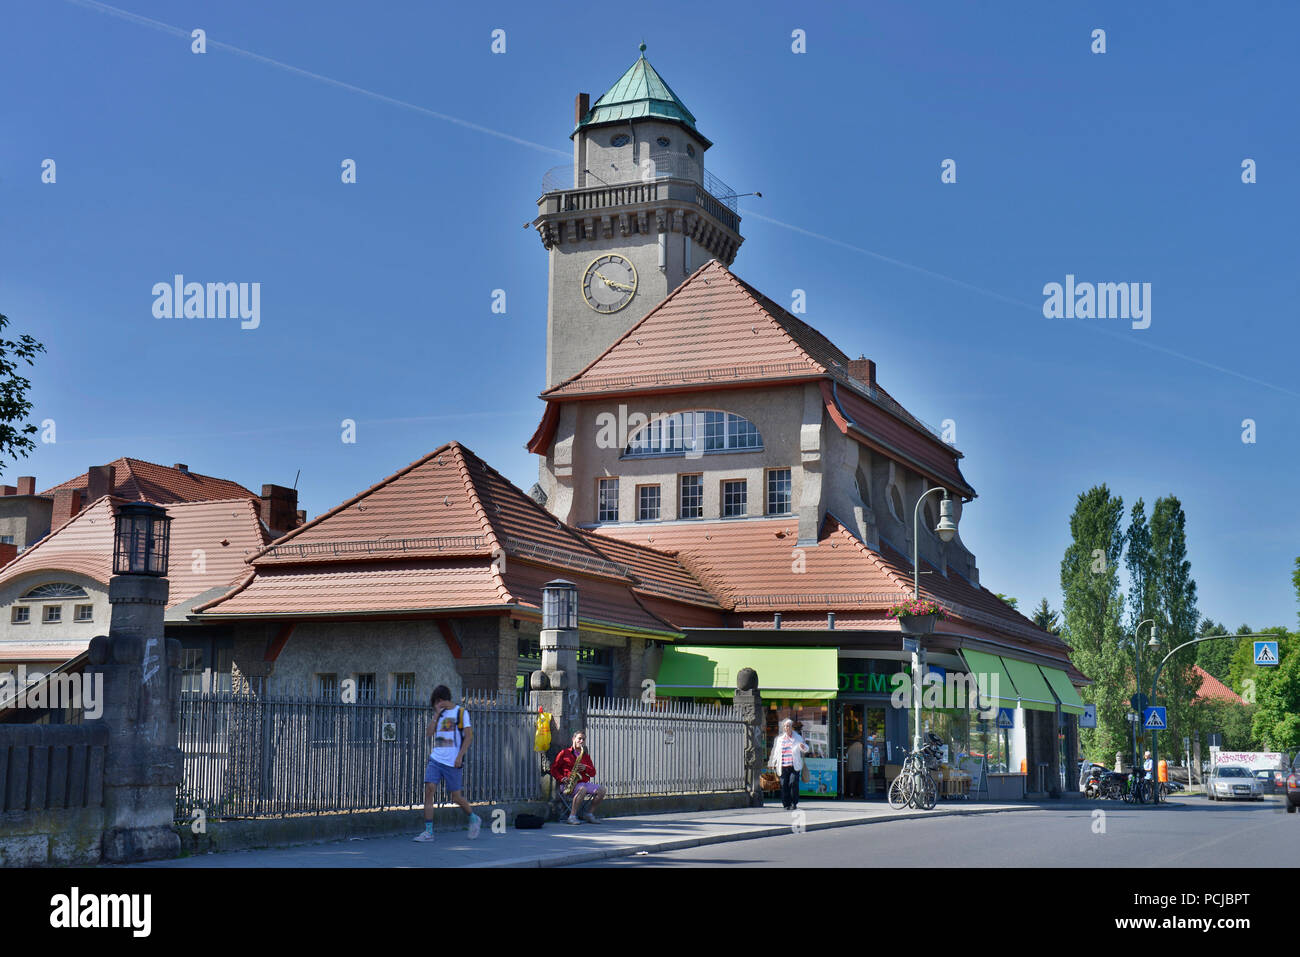 Bahnhof, Frohnau, Reinickendorf, Berlino, Deutschland Foto Stock